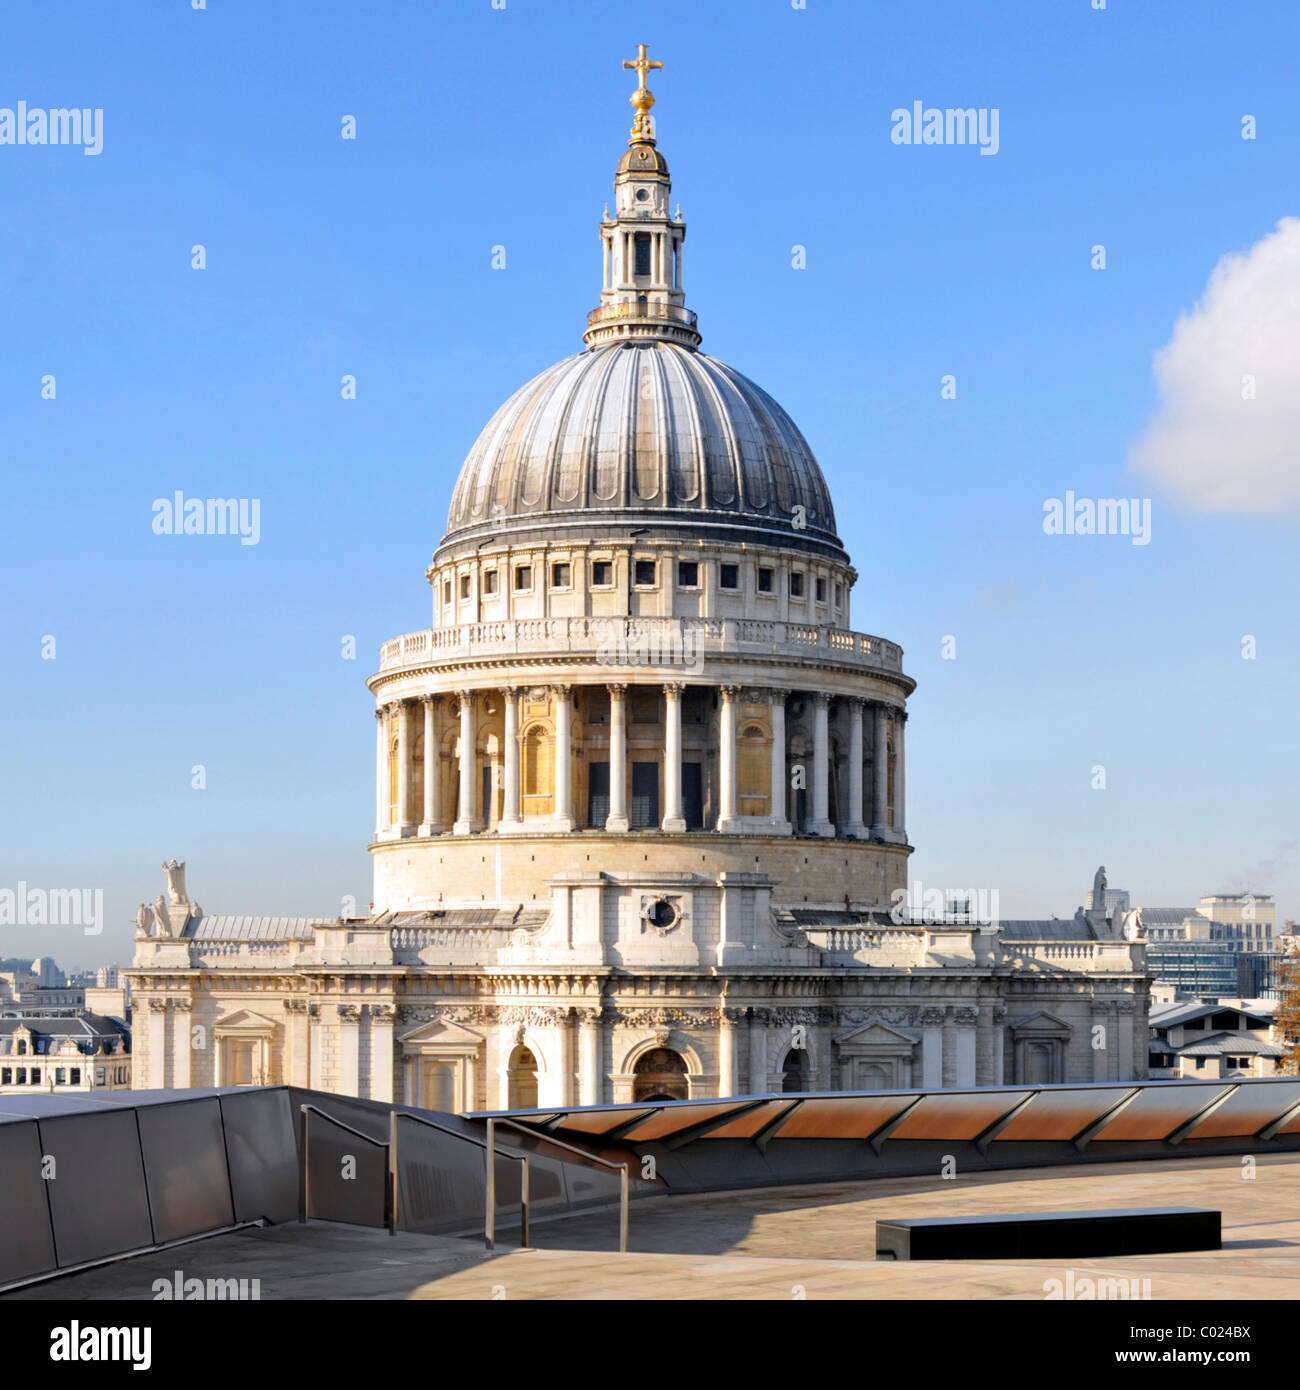 Un nuevo cambio de centro comercial terraza en el techo y la cúpula de la catedral de St Paul icónico histórica iglesia europea blue sky día histórico en la ciudad de Londres, Gran Bretaña. Foto de stock